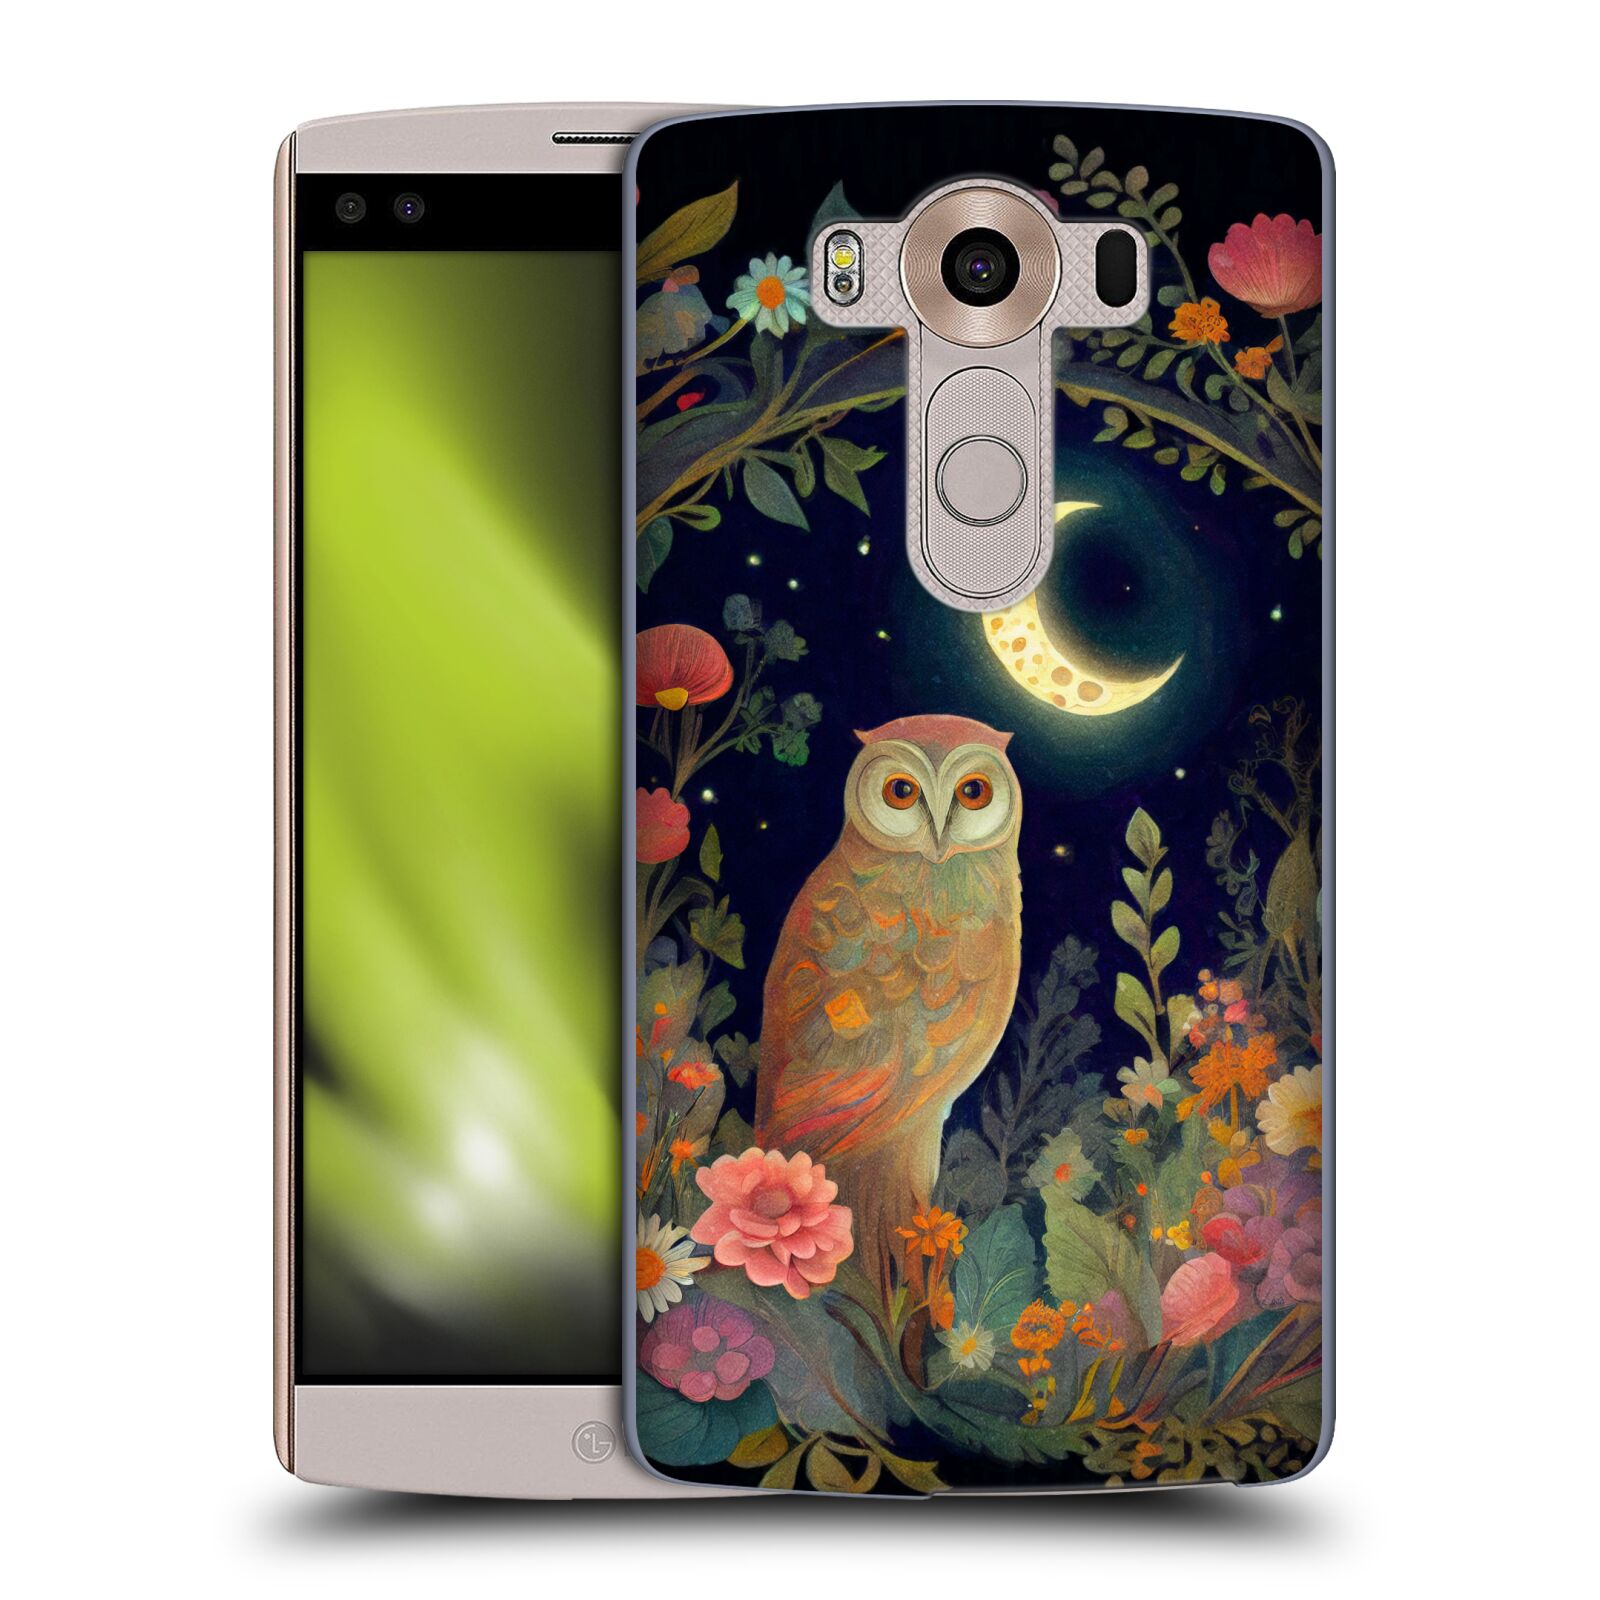 Obal na mobil LG V10 - HEAD CASE - JK Stewart sova a měsíc